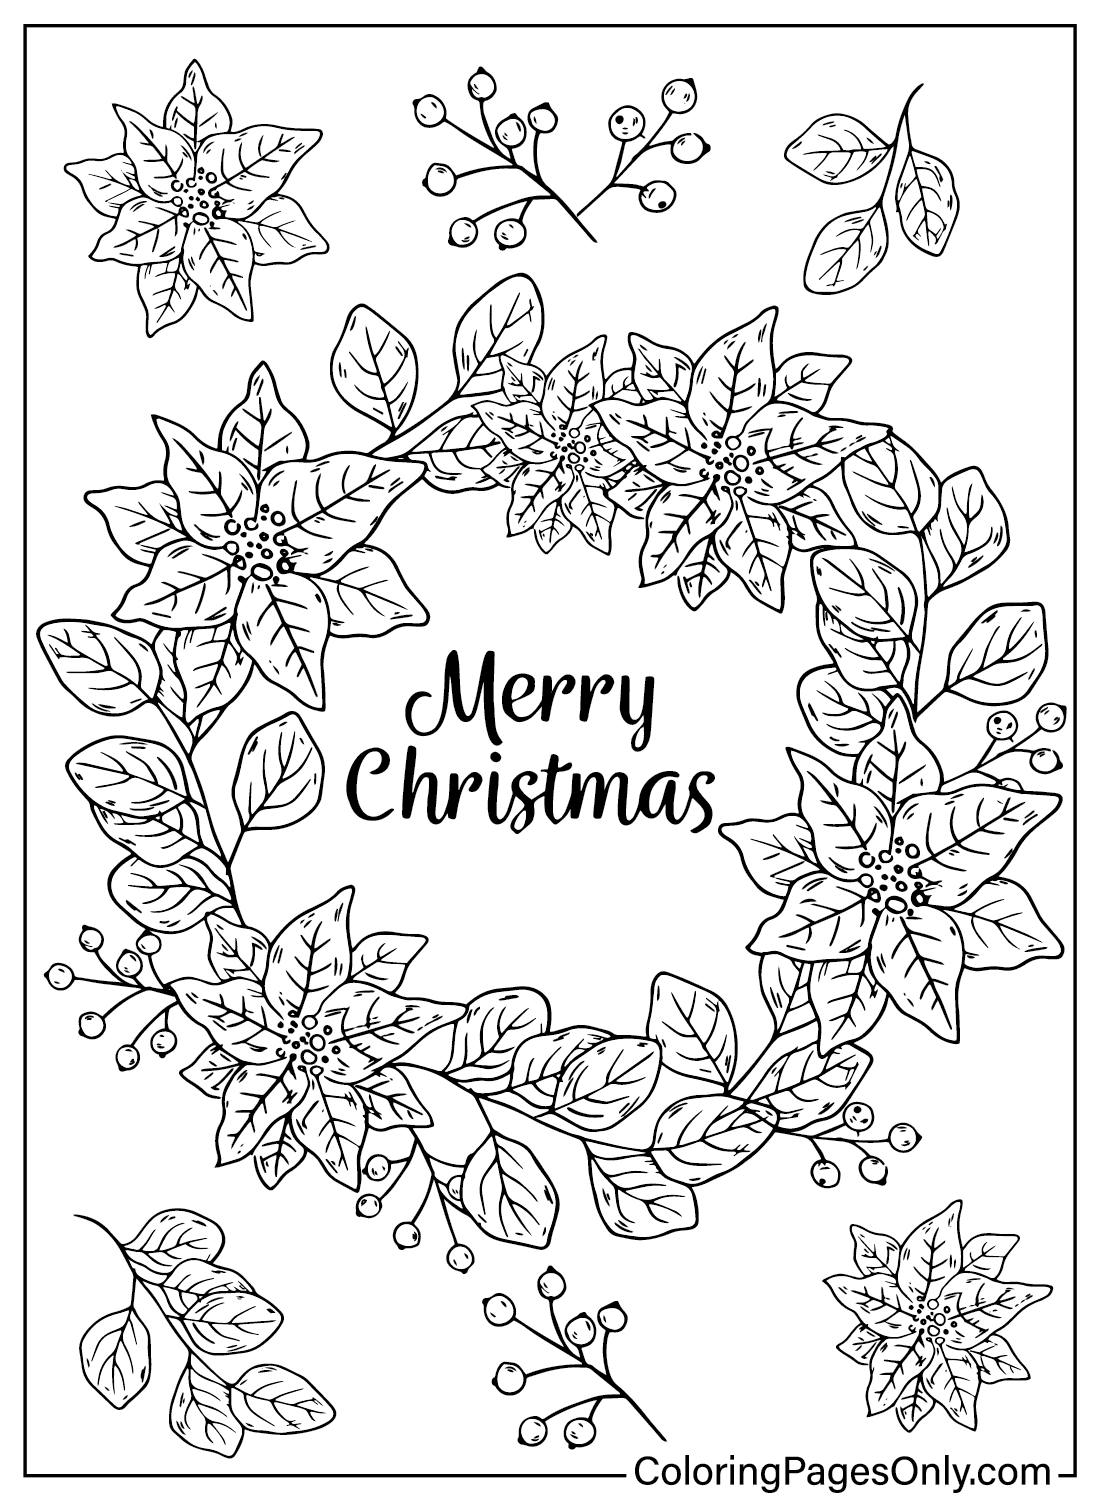 Página para colorear de corona de Navidad para imprimir desde corona de Navidad